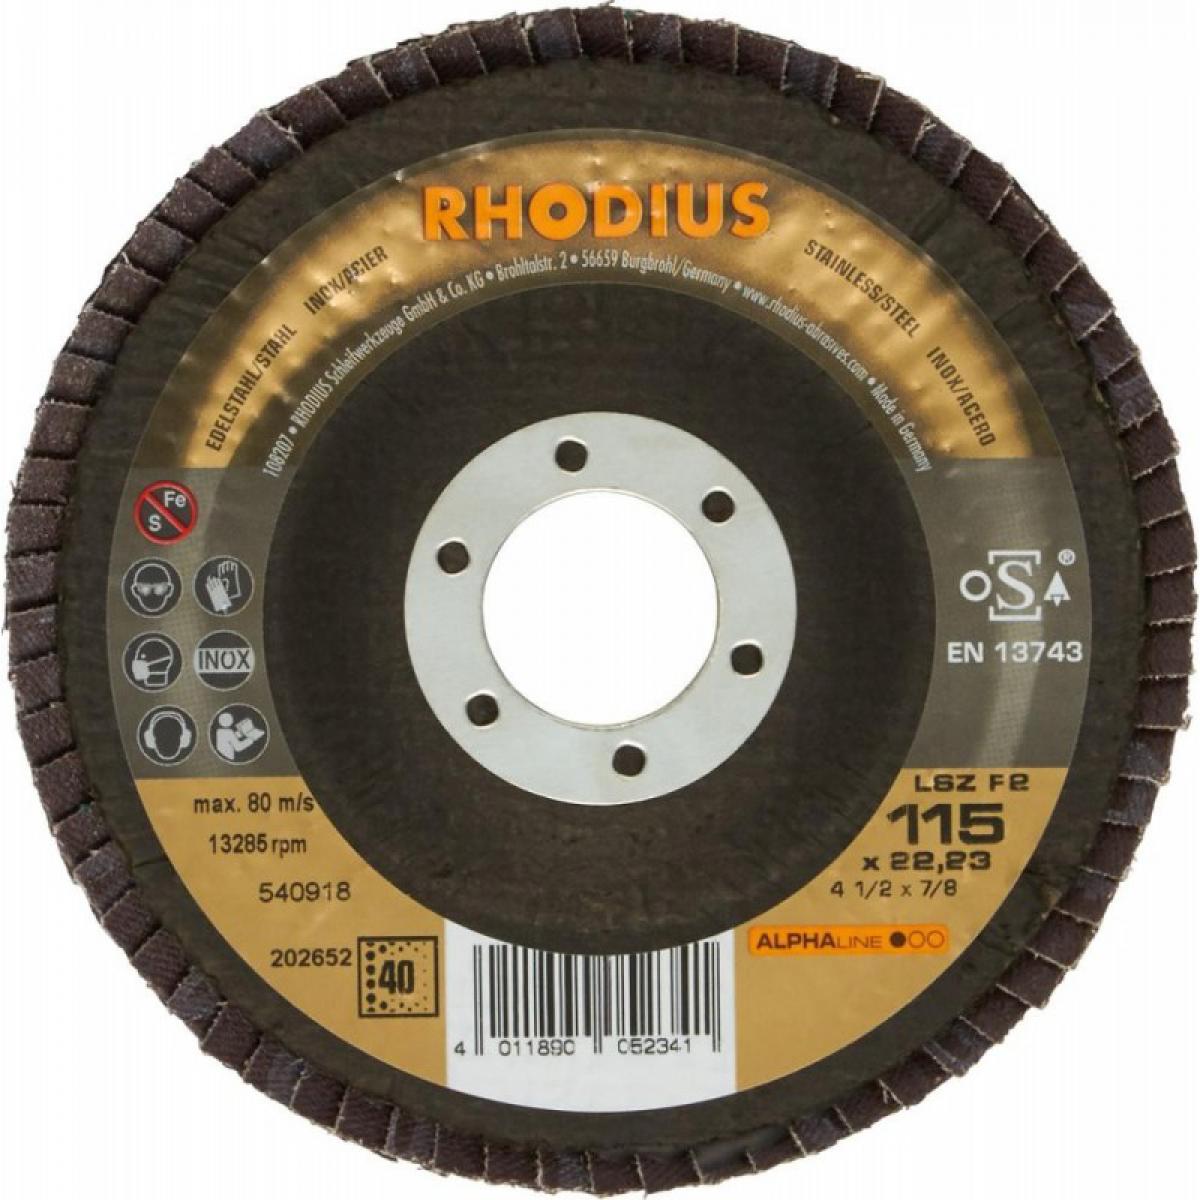 Rhodius - Disque à lamelles LSZ F2115mm K 80 Rhodius - Abrasifs et brosses